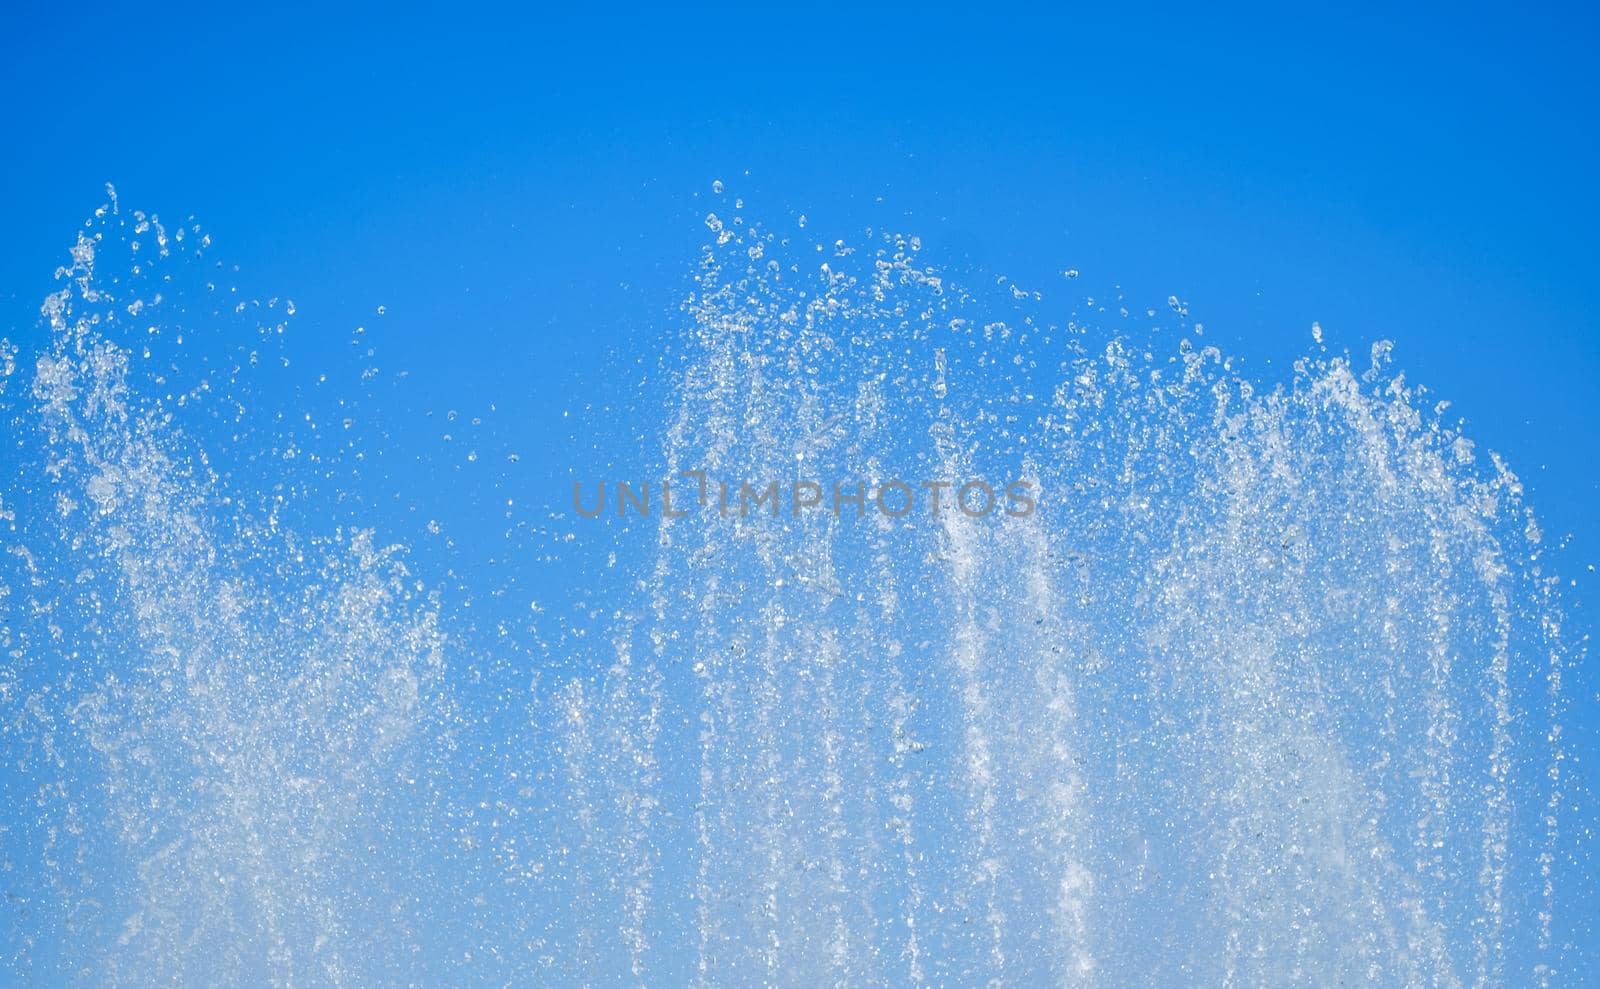 artesian fountain on blue sky by Roberto